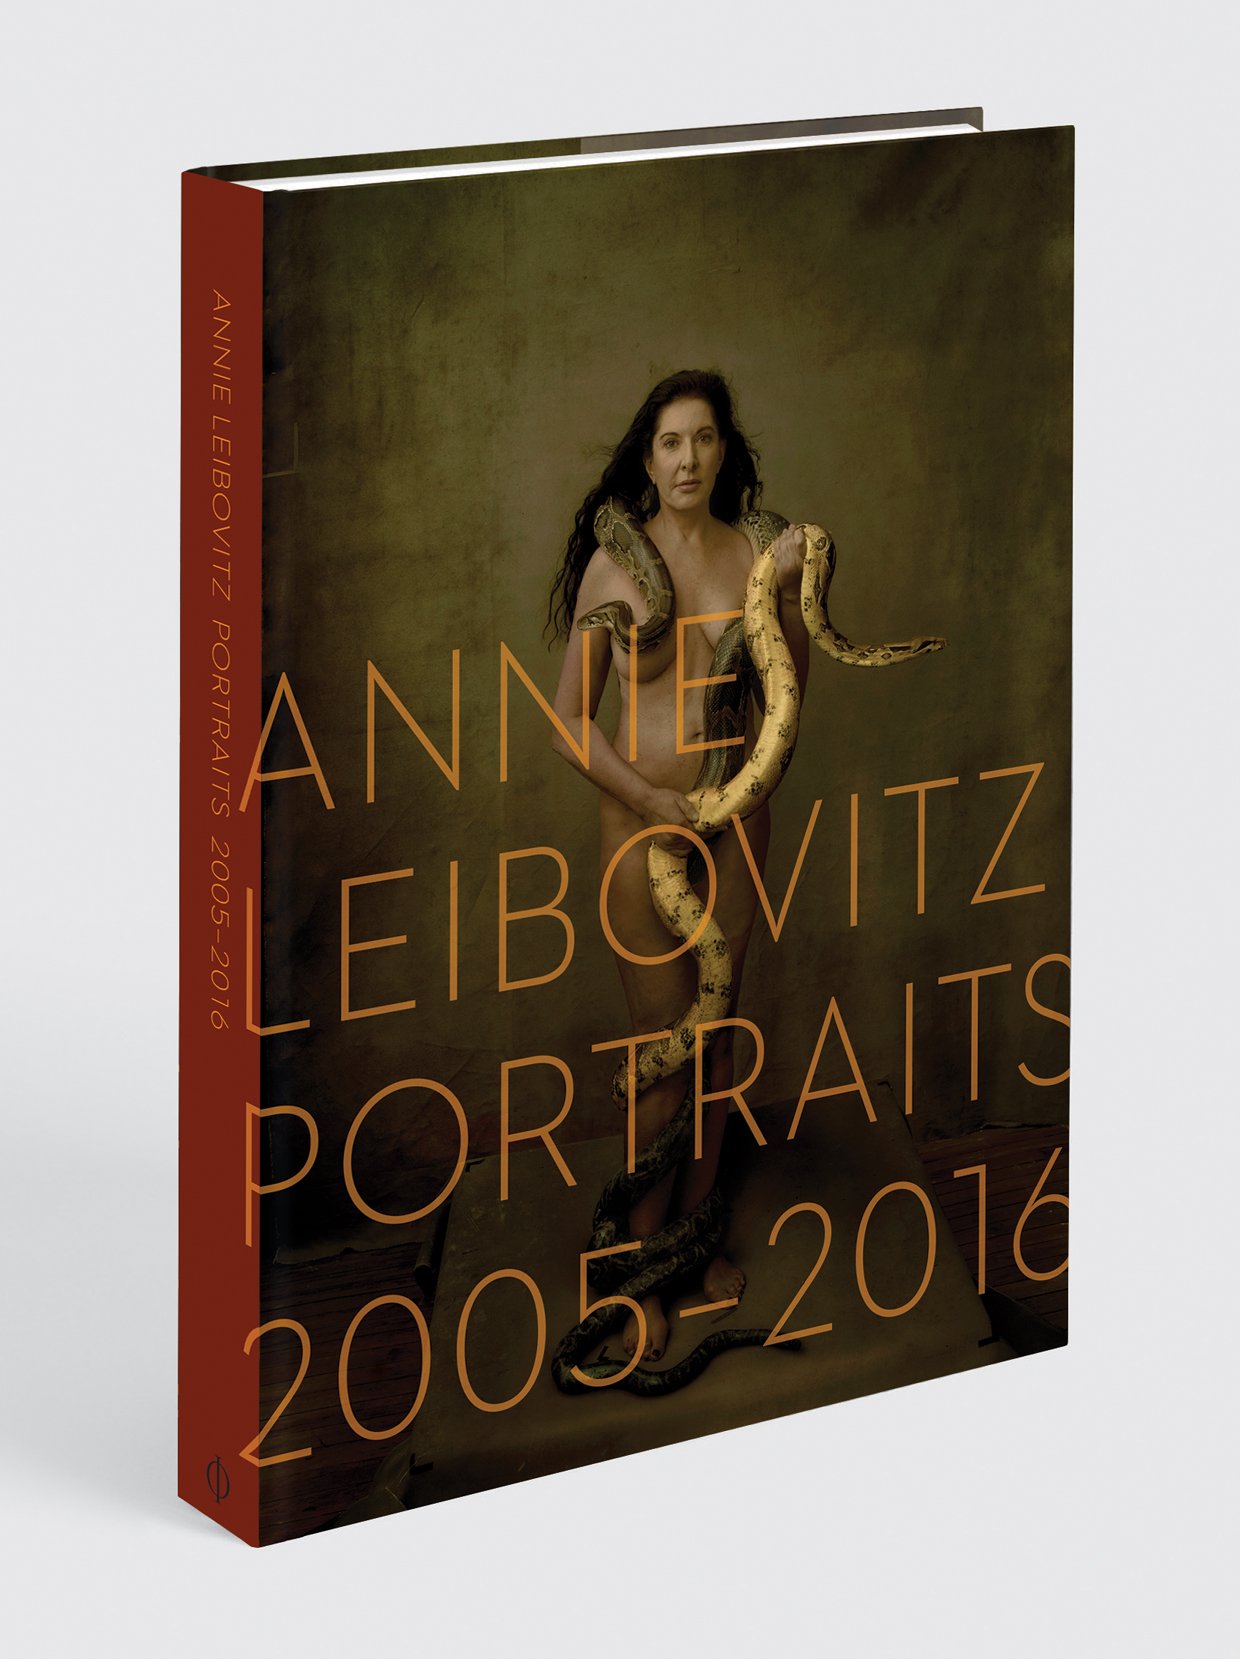 capa-annie-leibovitz-portraits-2005-2016